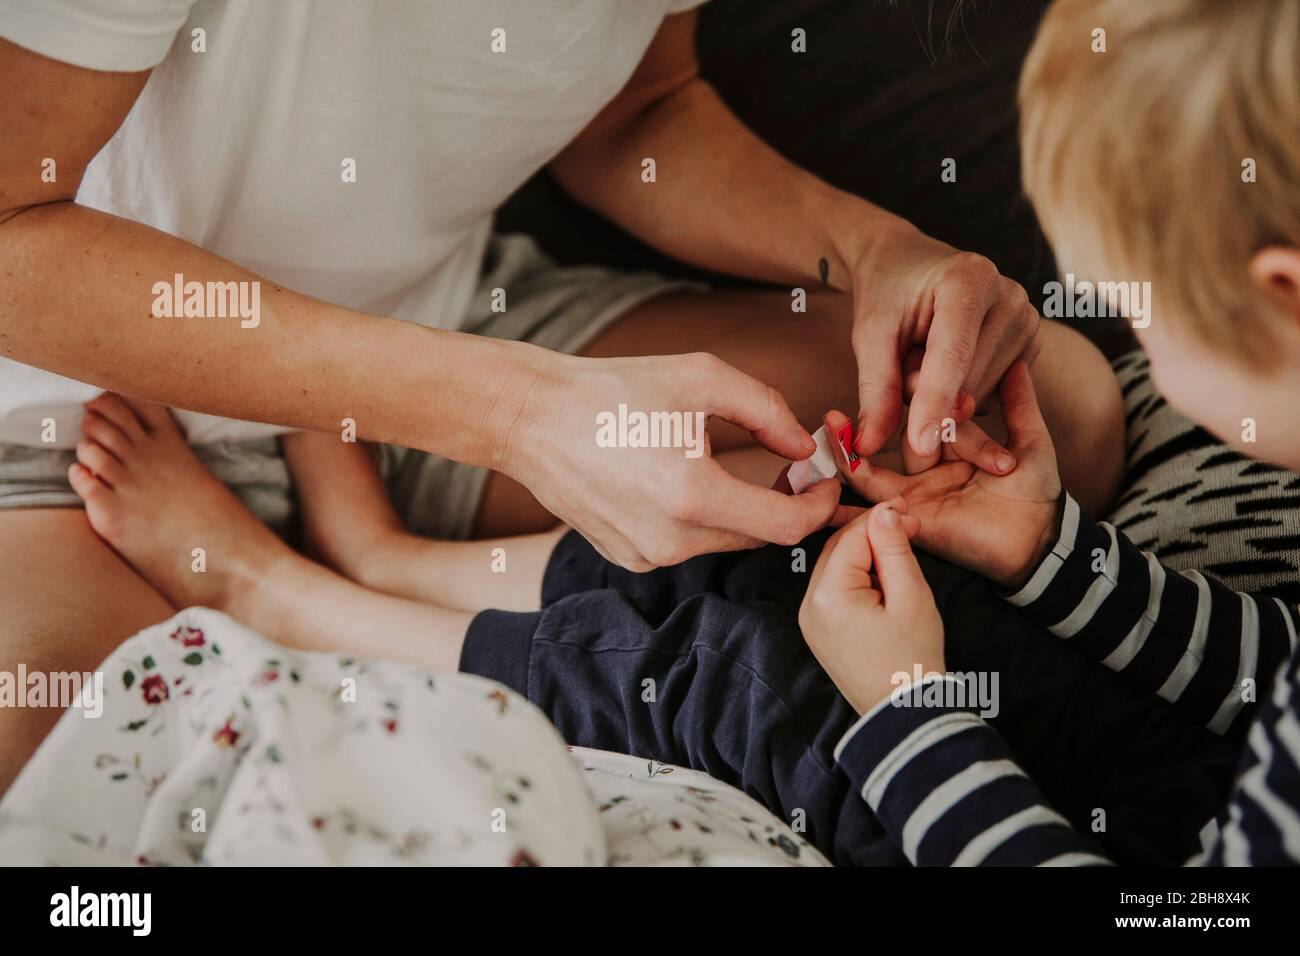 Morgens im Bett, Mutter verarztet Wunde am Finger ihres Sohnes Foto Stock